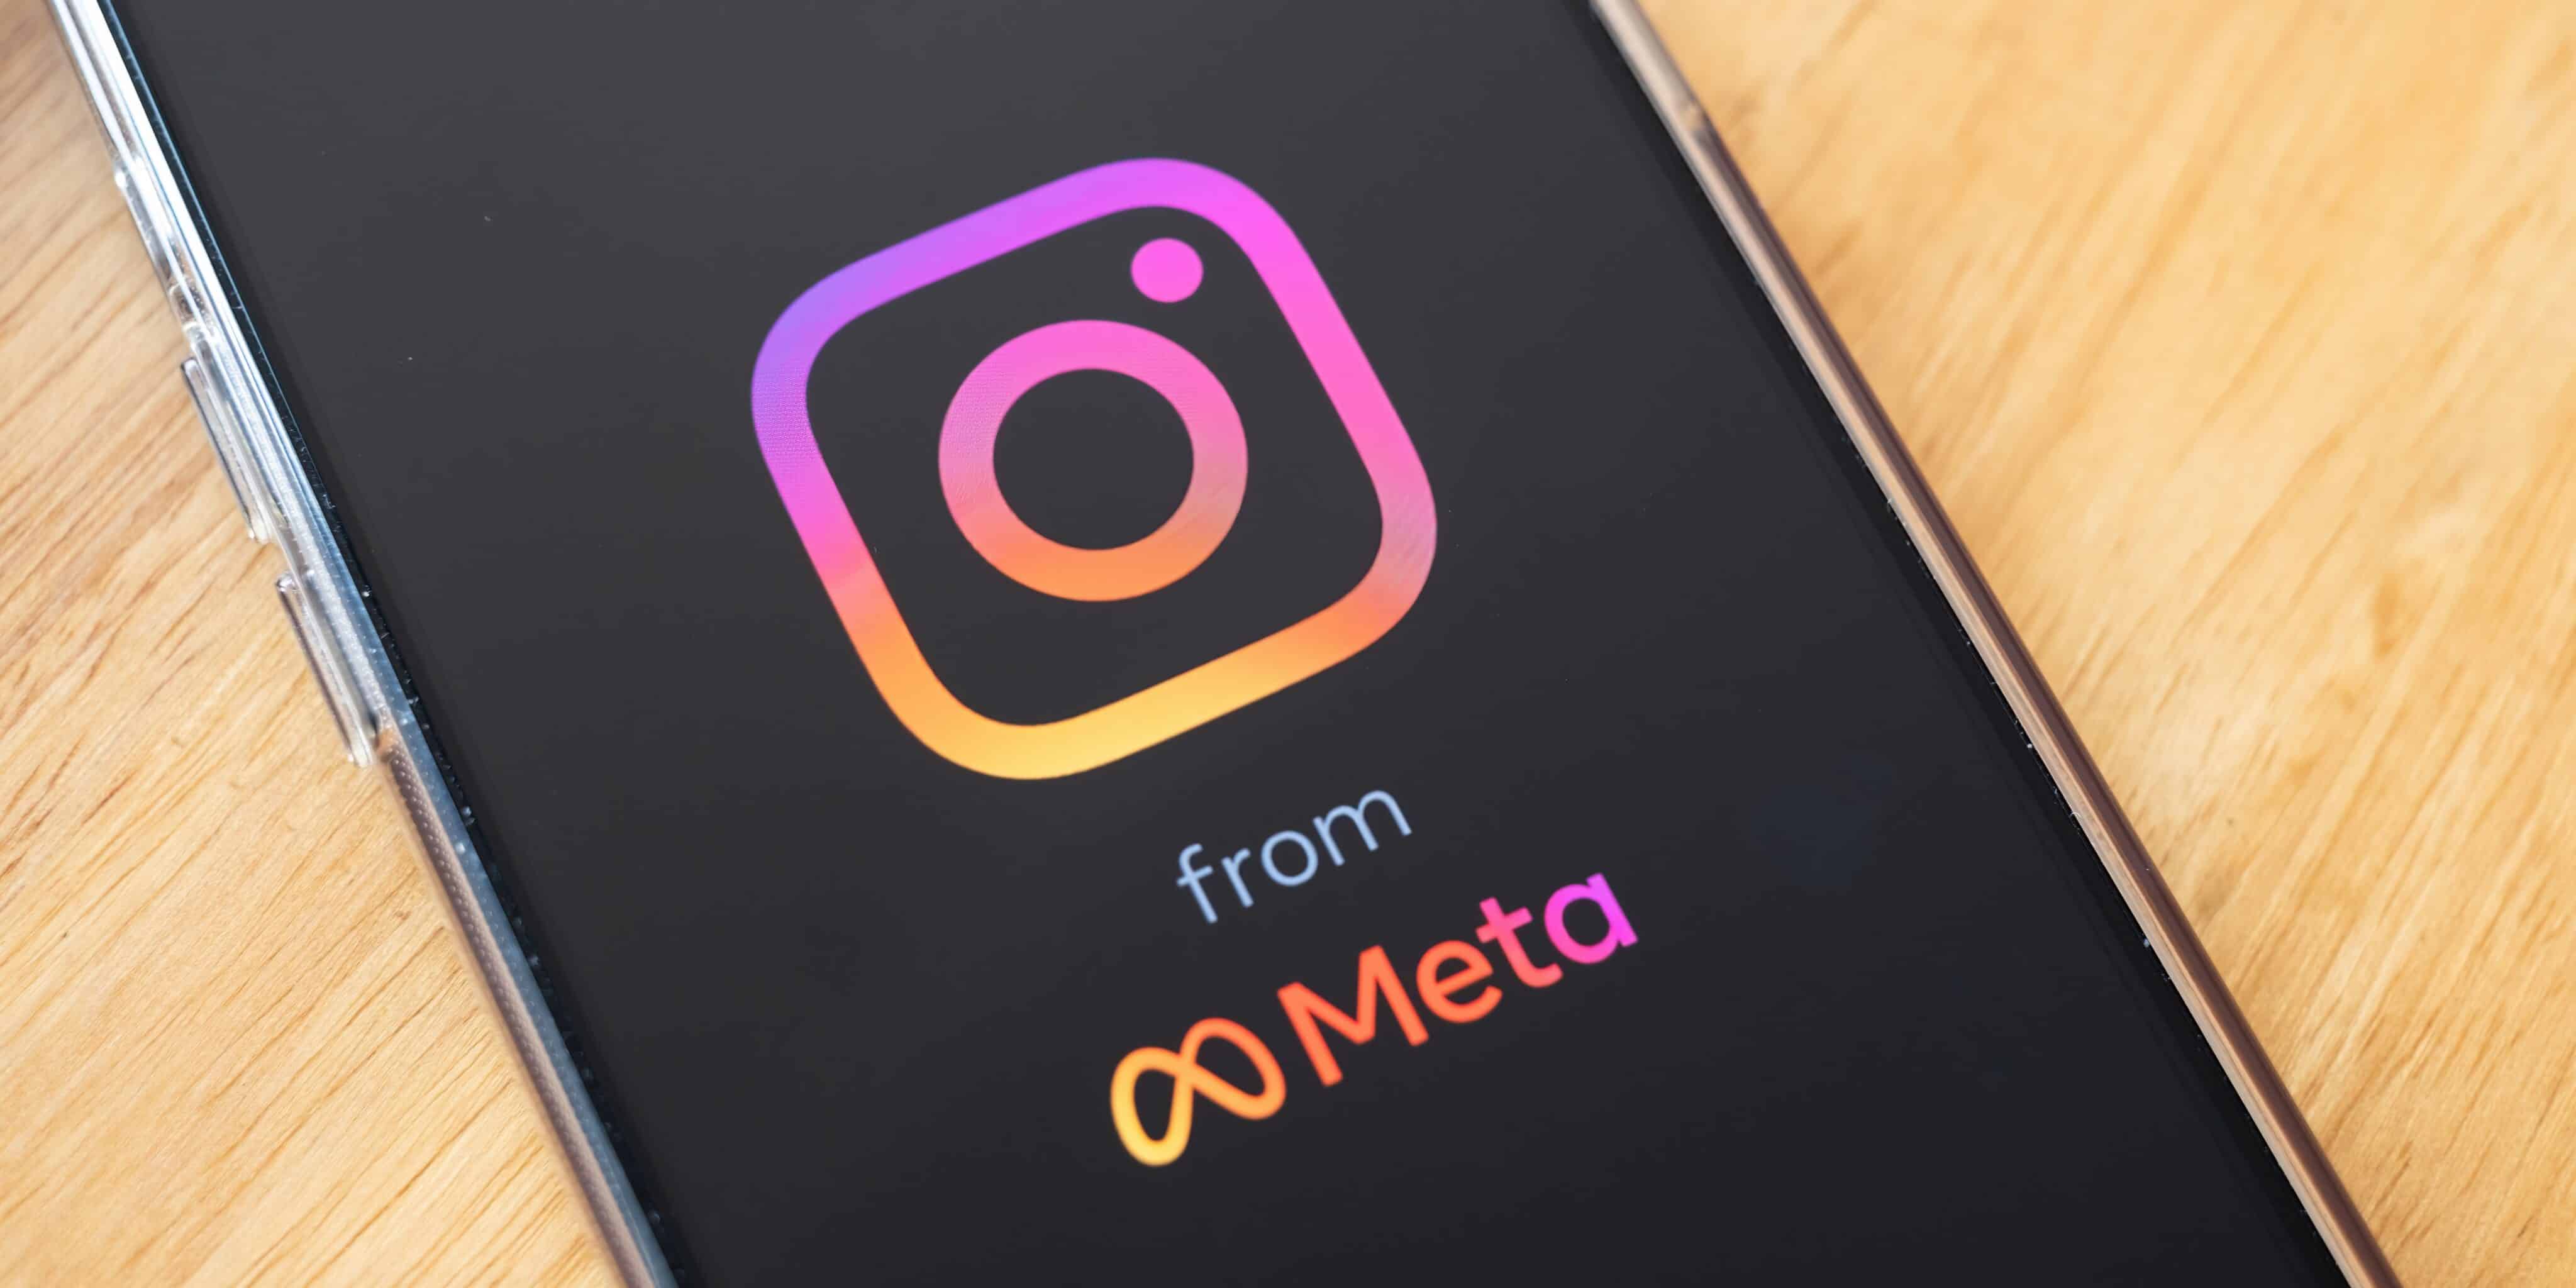 Instagram testa gif em comentários do feed e reels